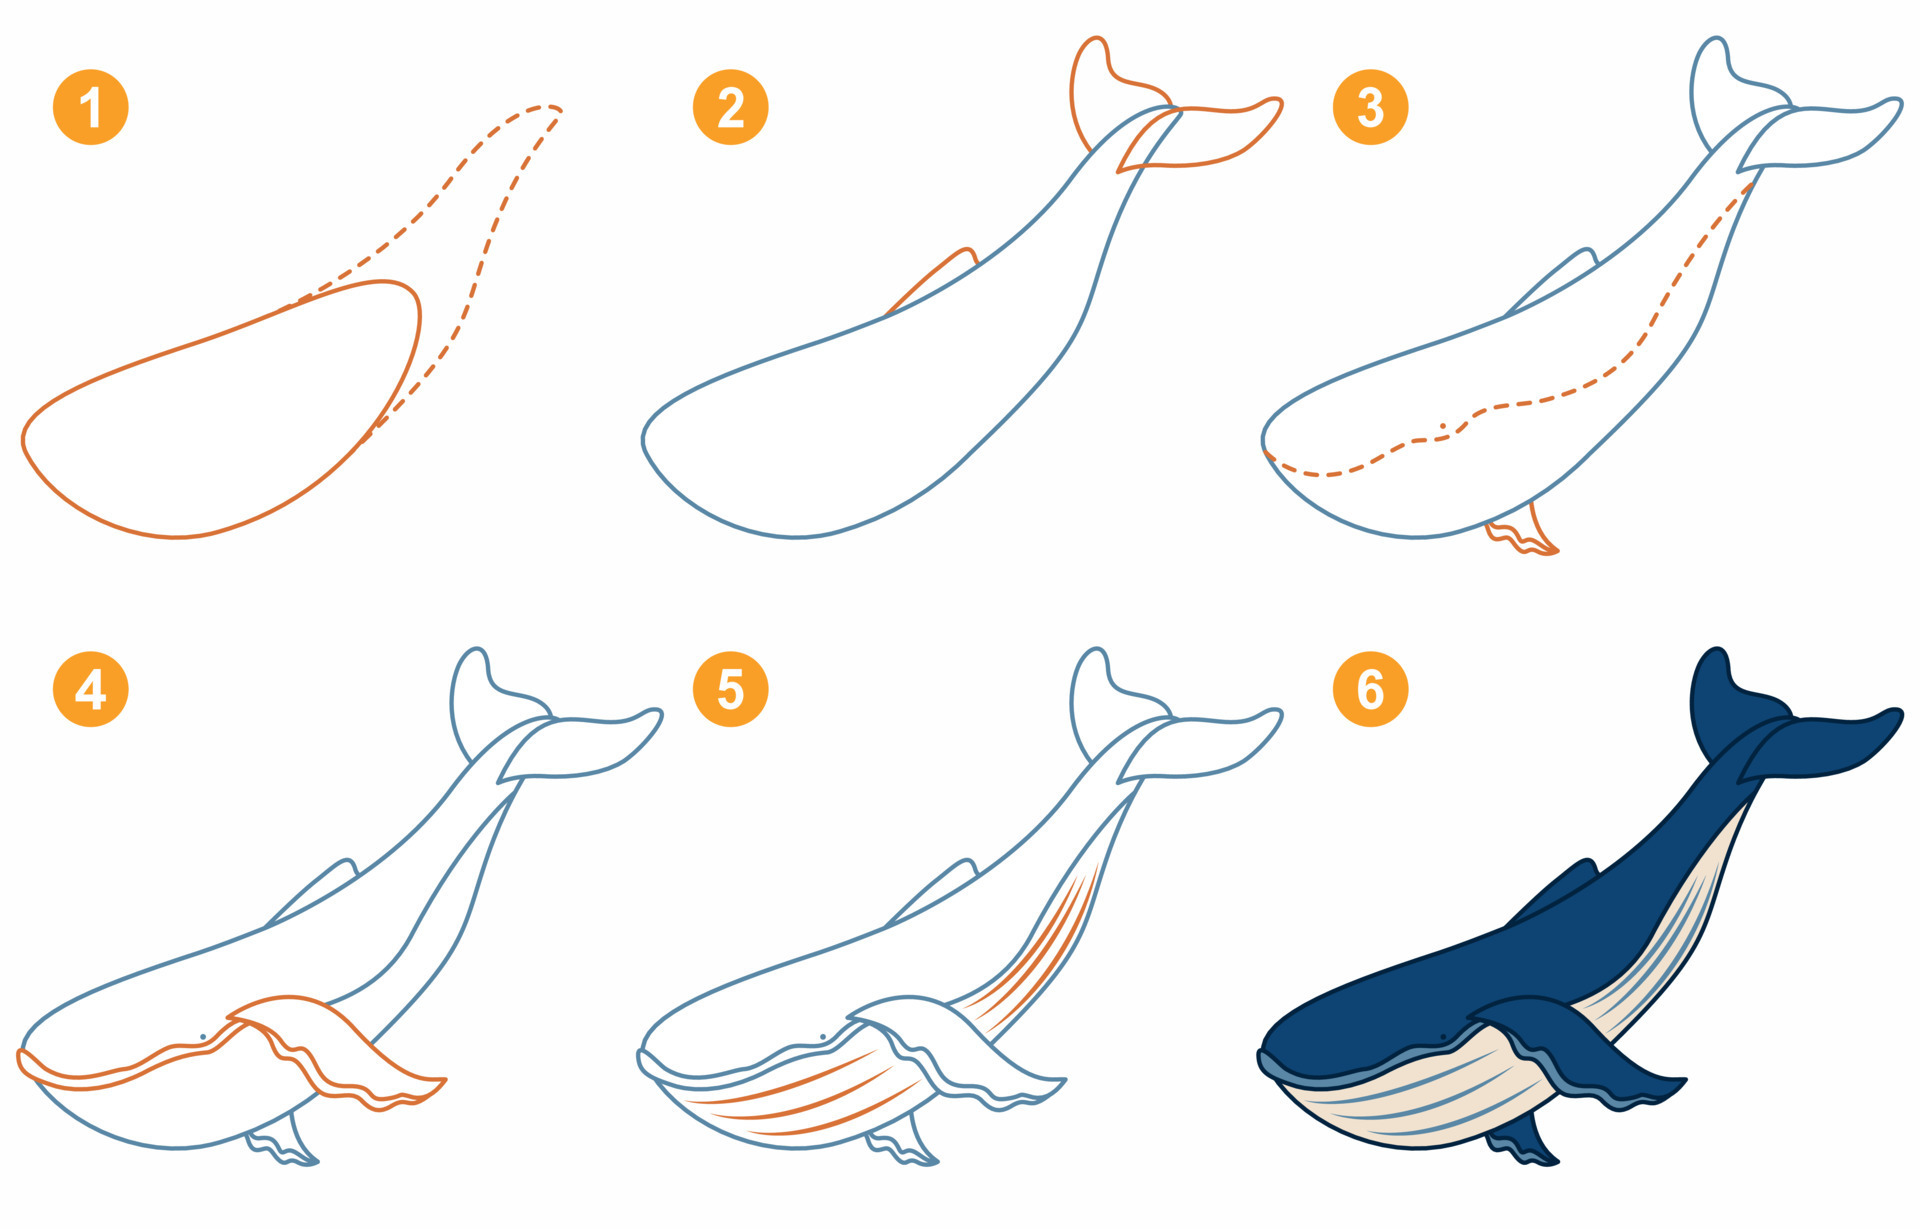 instrucciones para dibujar ballenas. siga paso a paso para dibujar ballenas.  hoja de trabajo para niños aprendiendo a dibujar mamíferos marinos. juego  para la página de vectores infantiles. esquema para dibujar ballenas.